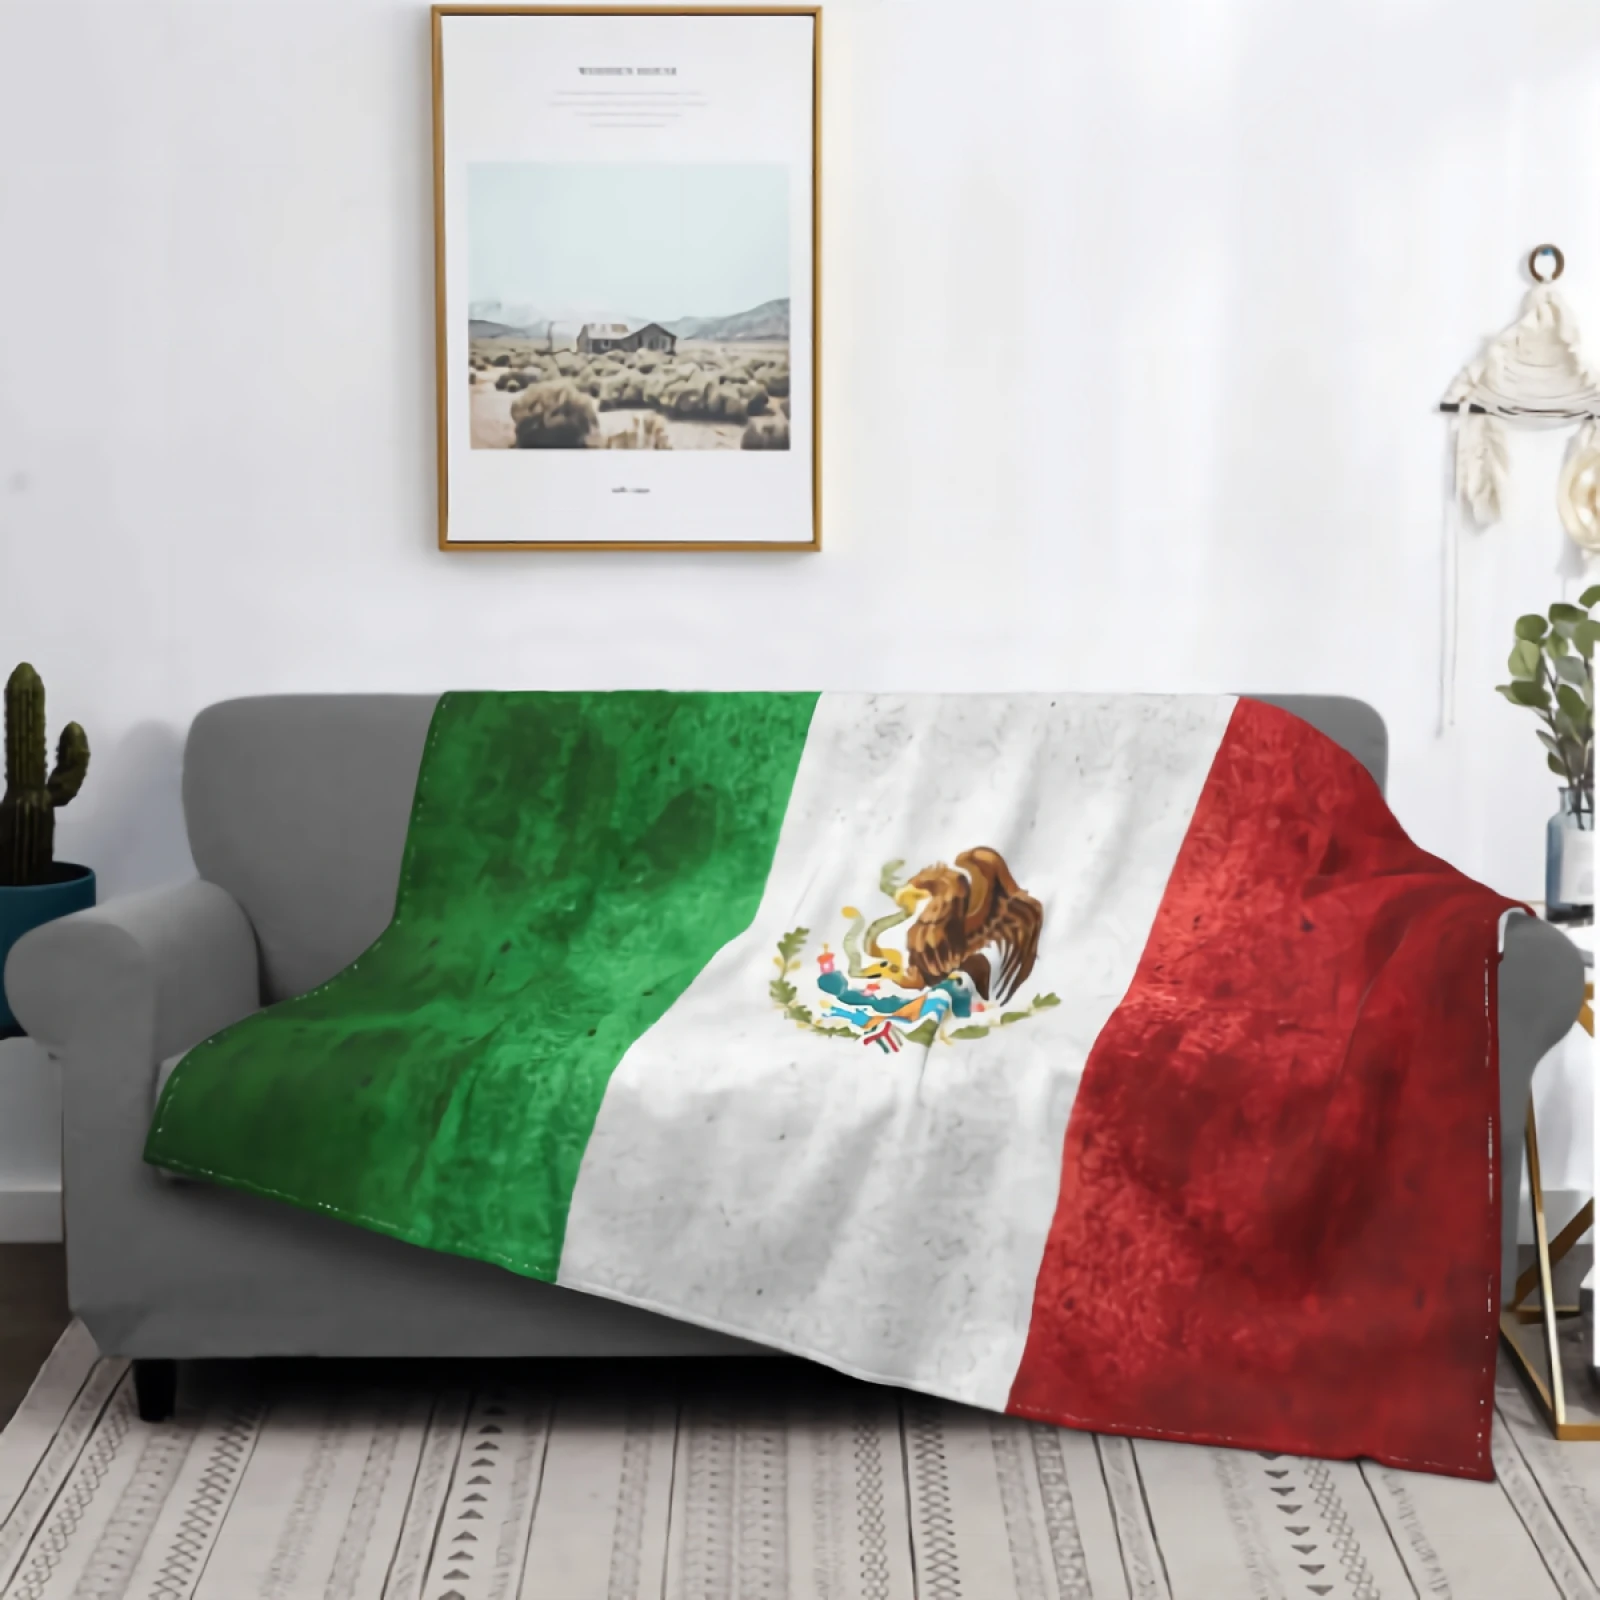 

Покрывало с флагом Мексики или мексиканским баннером для кушетки, супермягкое уютное плюшевое пушистое одеяло из микрофибры, легкое теплое...